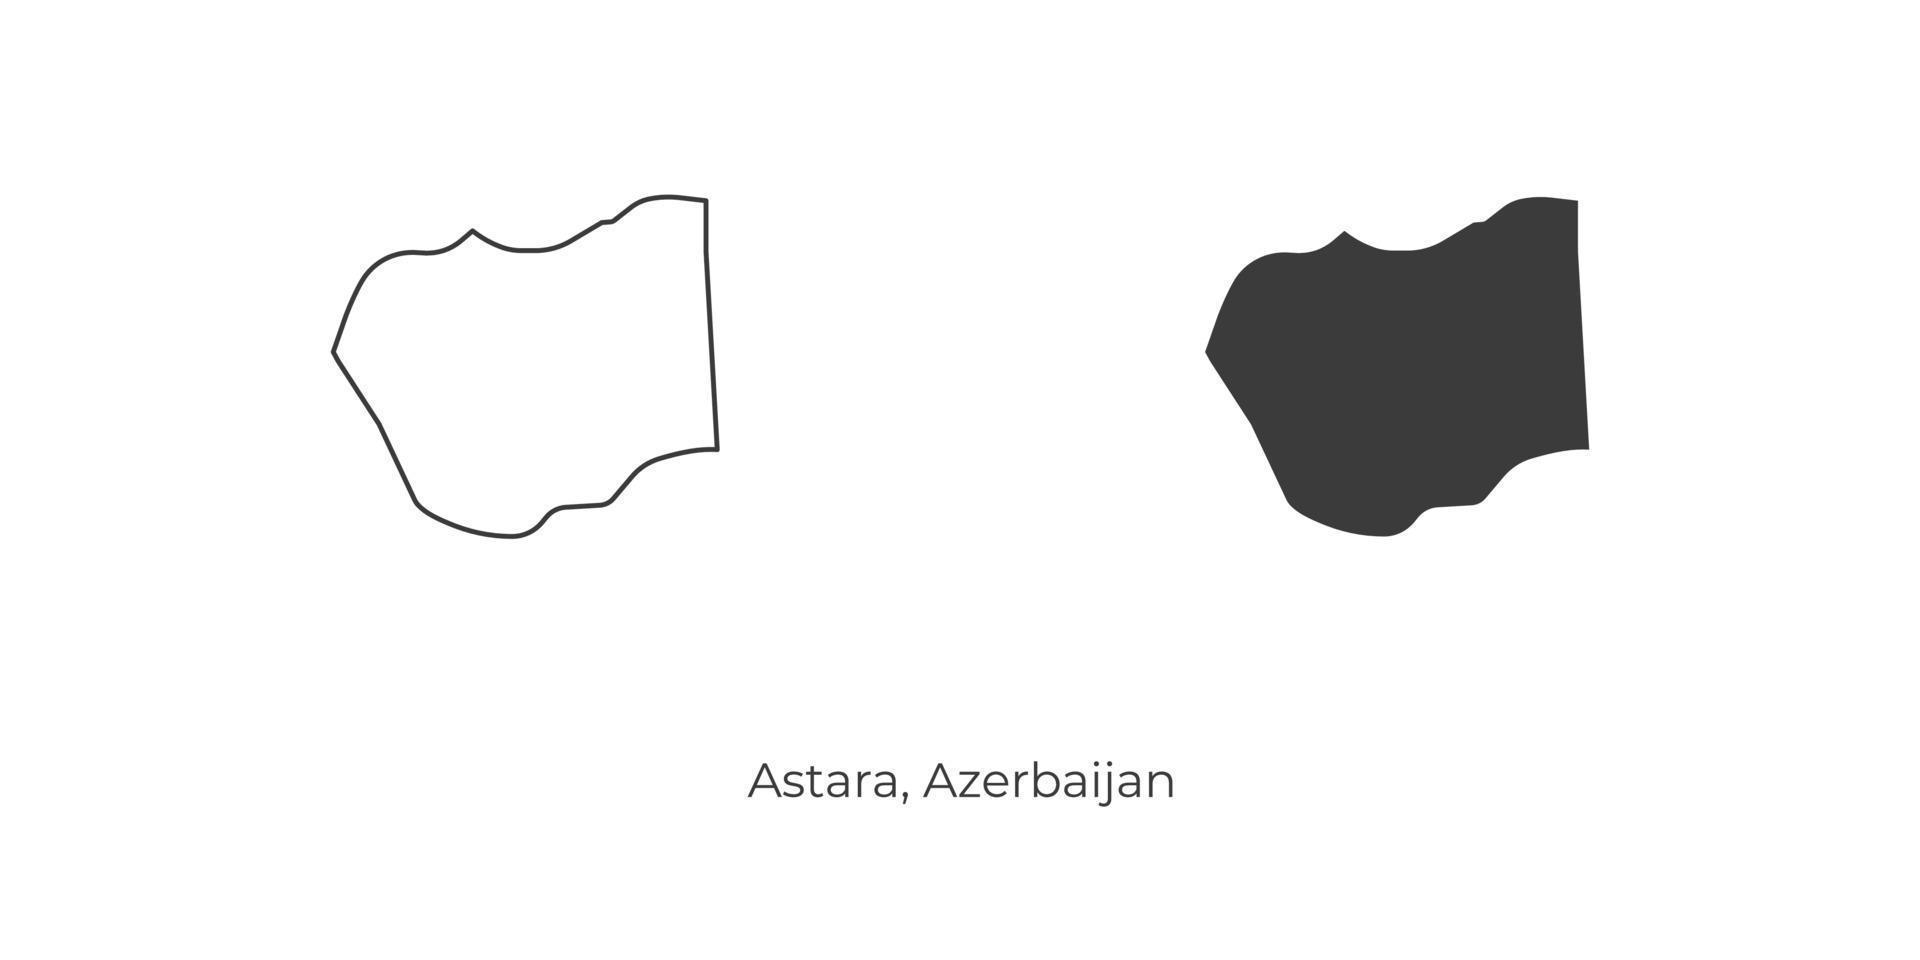 ilustração em vetor simples do mapa de astara, azerbaijão.